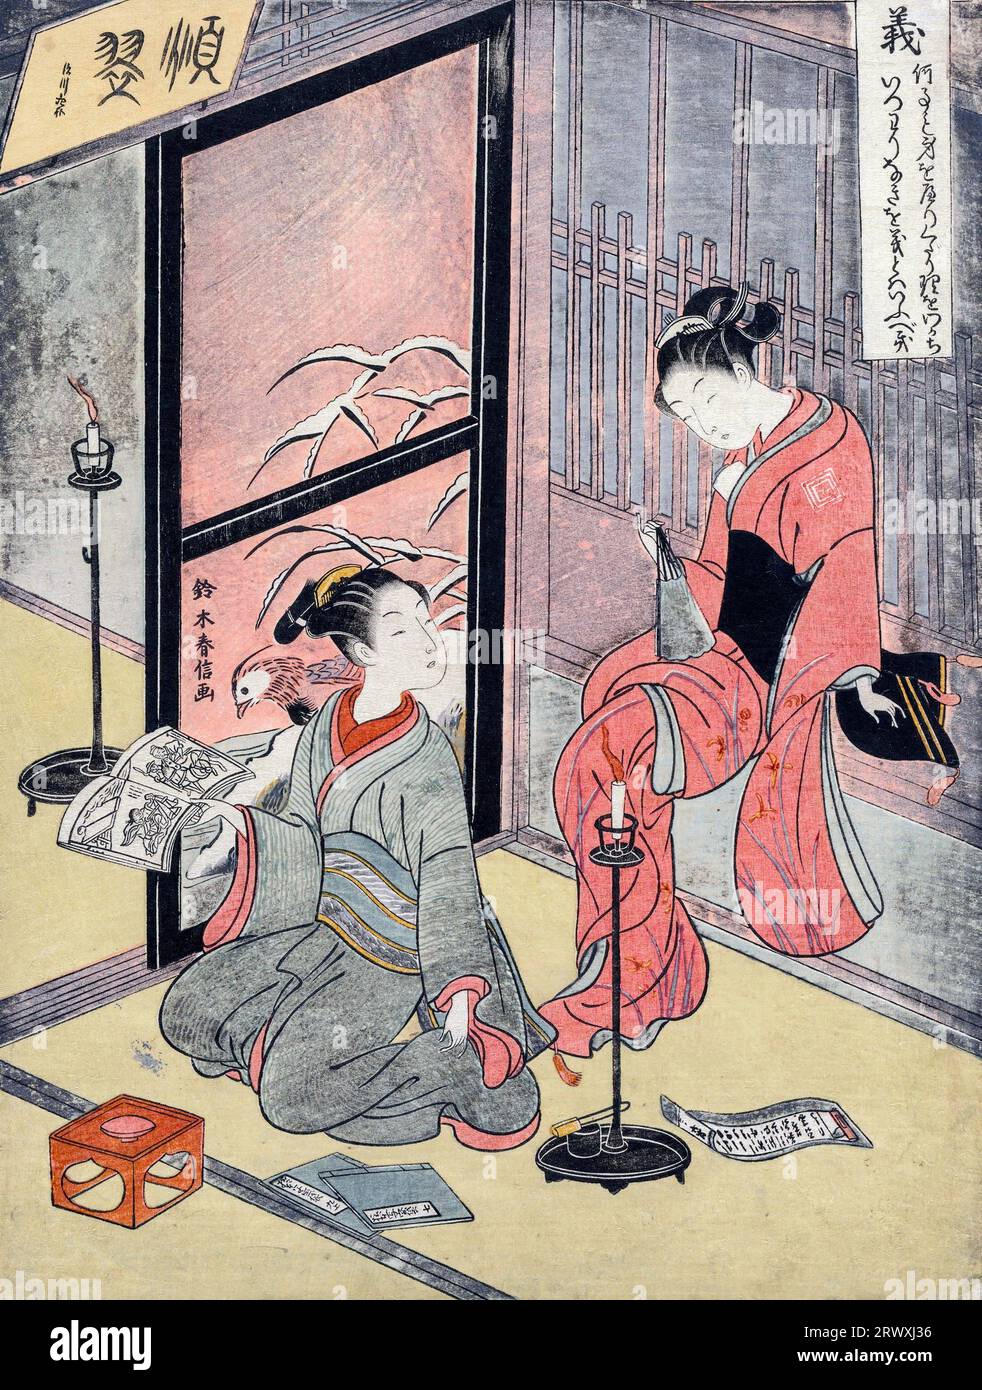 Giustizia, dalle cinque virtù di Suzuki Harunobu (c. 1725-1770), periodo edo, stampa a blocchi di legno a colori, 1767 Foto Stock